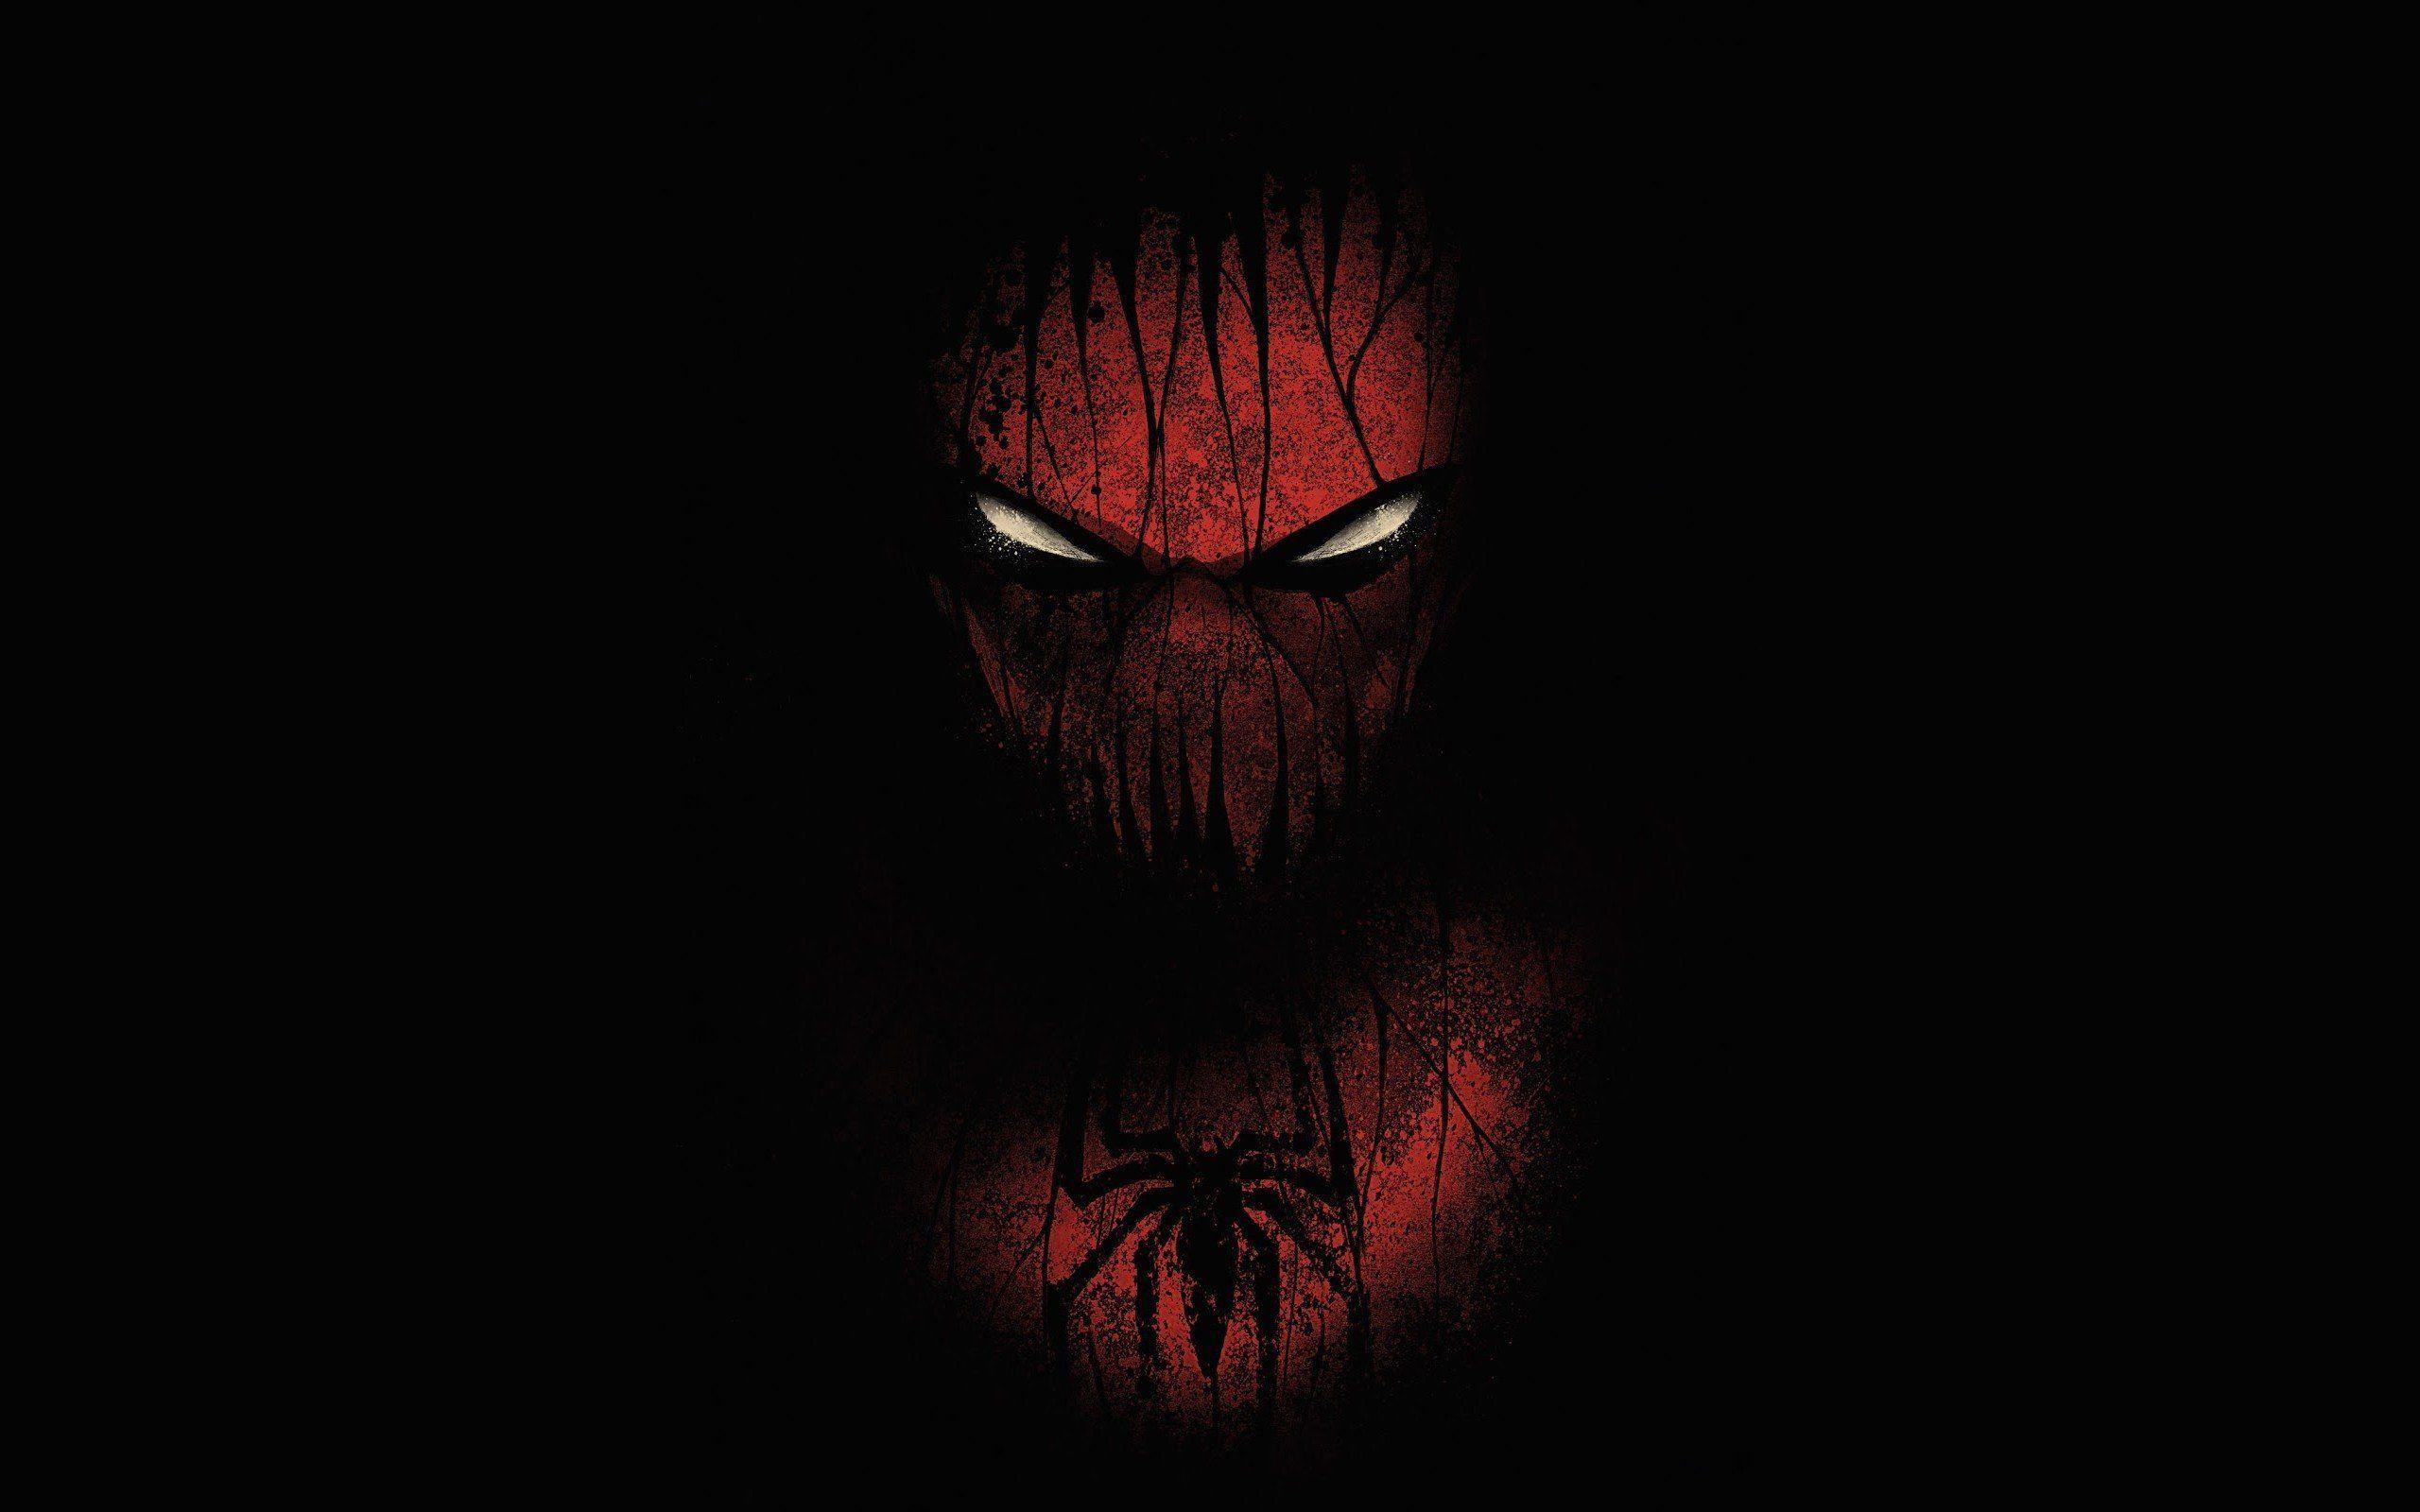 Black Spider Man Wallpaper. Black wallpaper